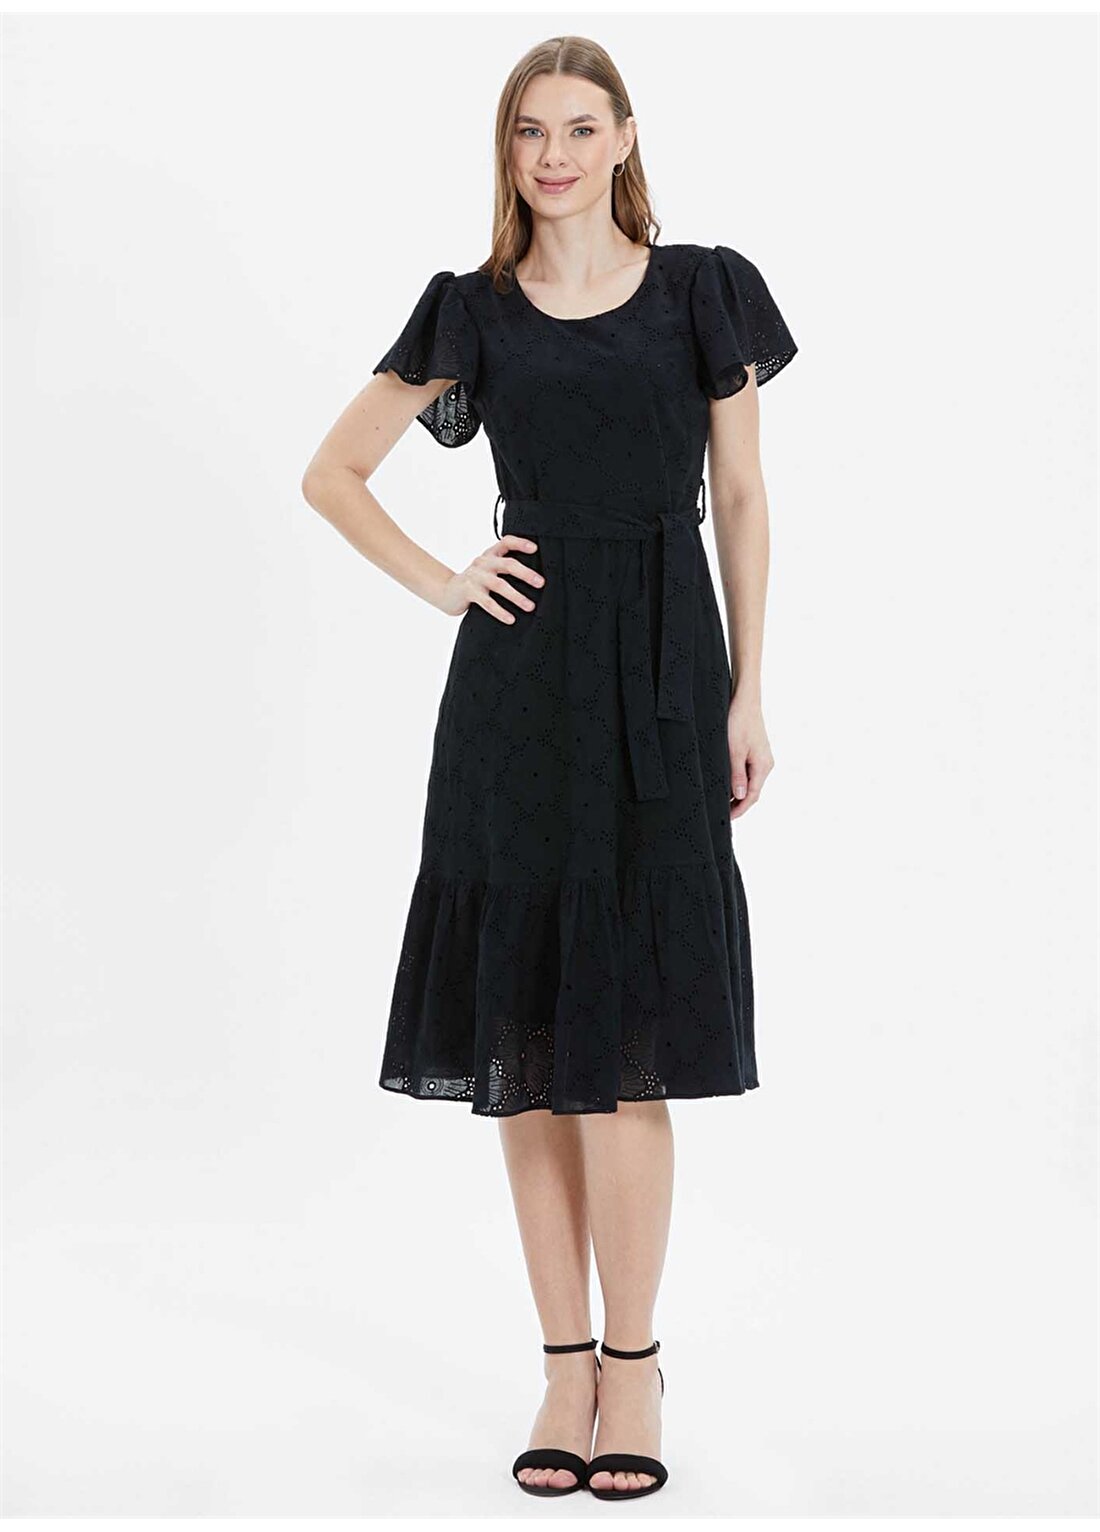 Selen O Yaka Desenli Siyah Standart Kadın Elbise 24YSL7410